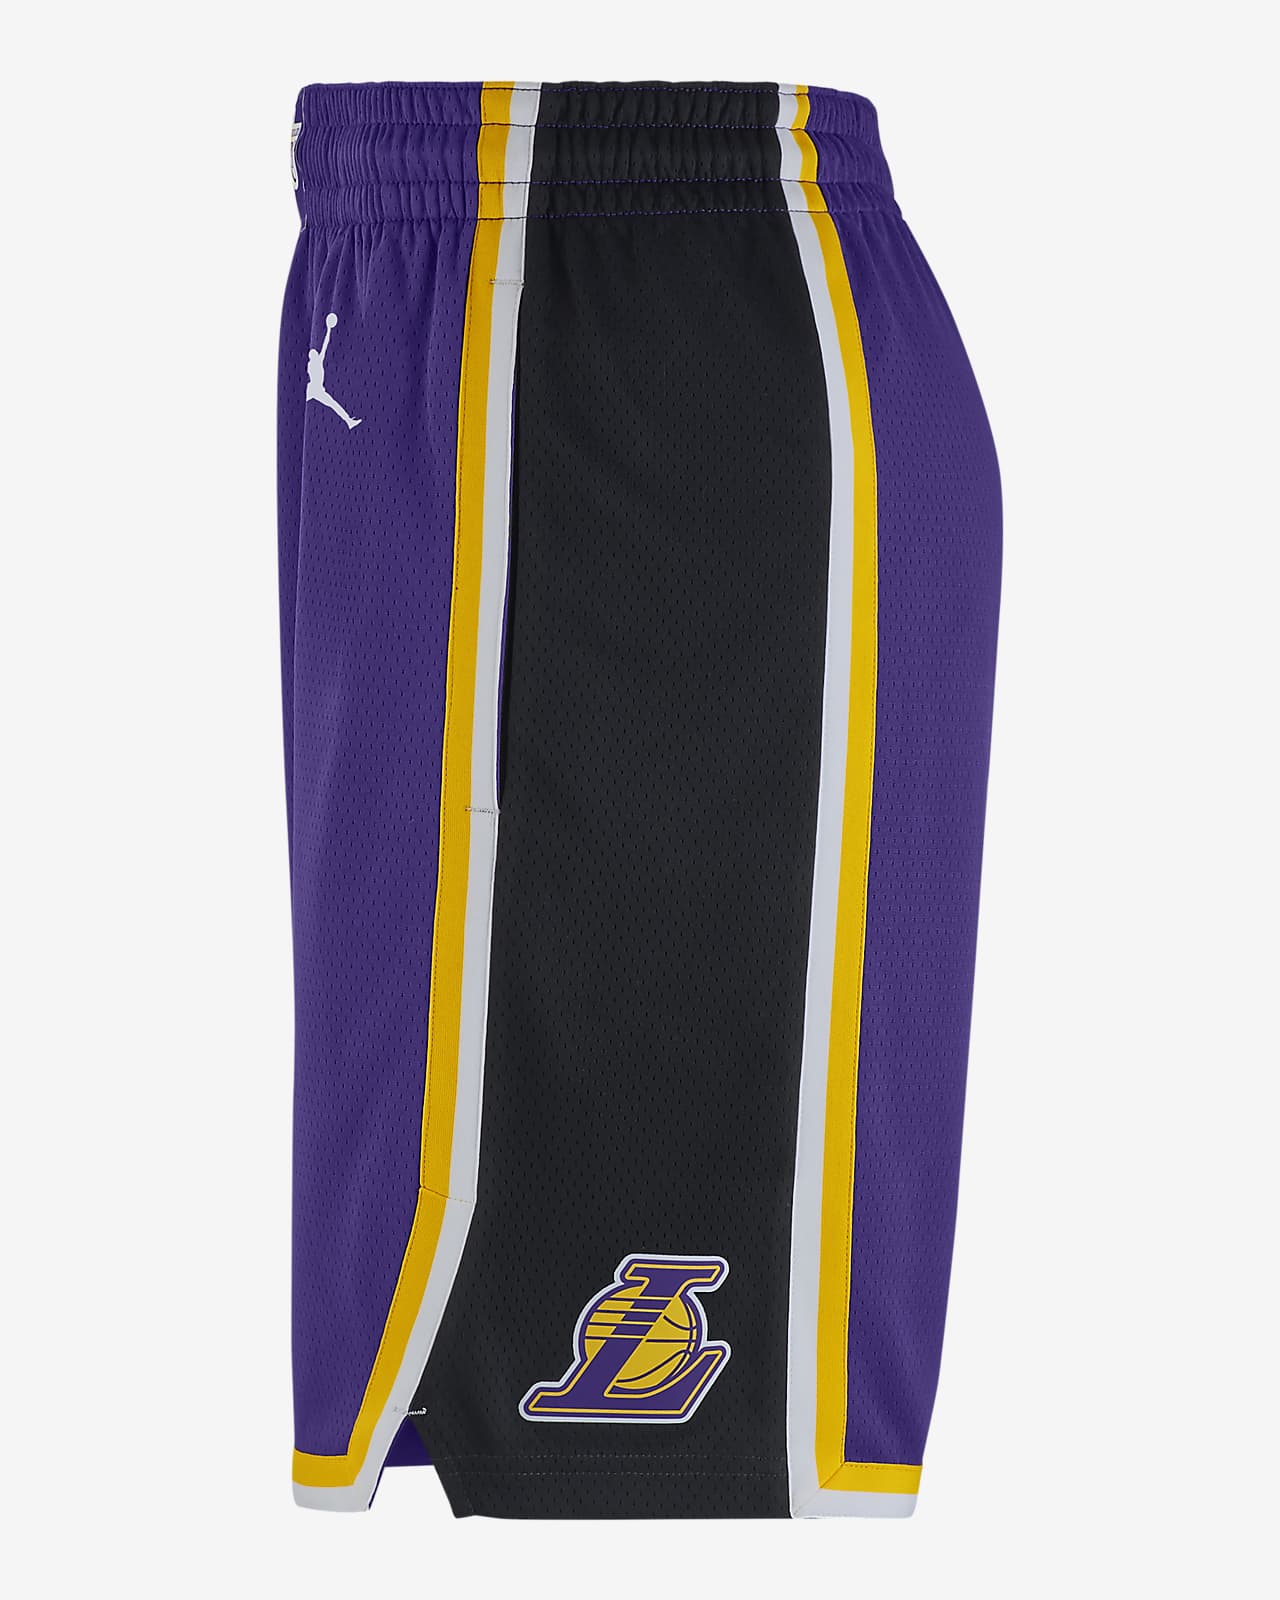 jordan purple shorts